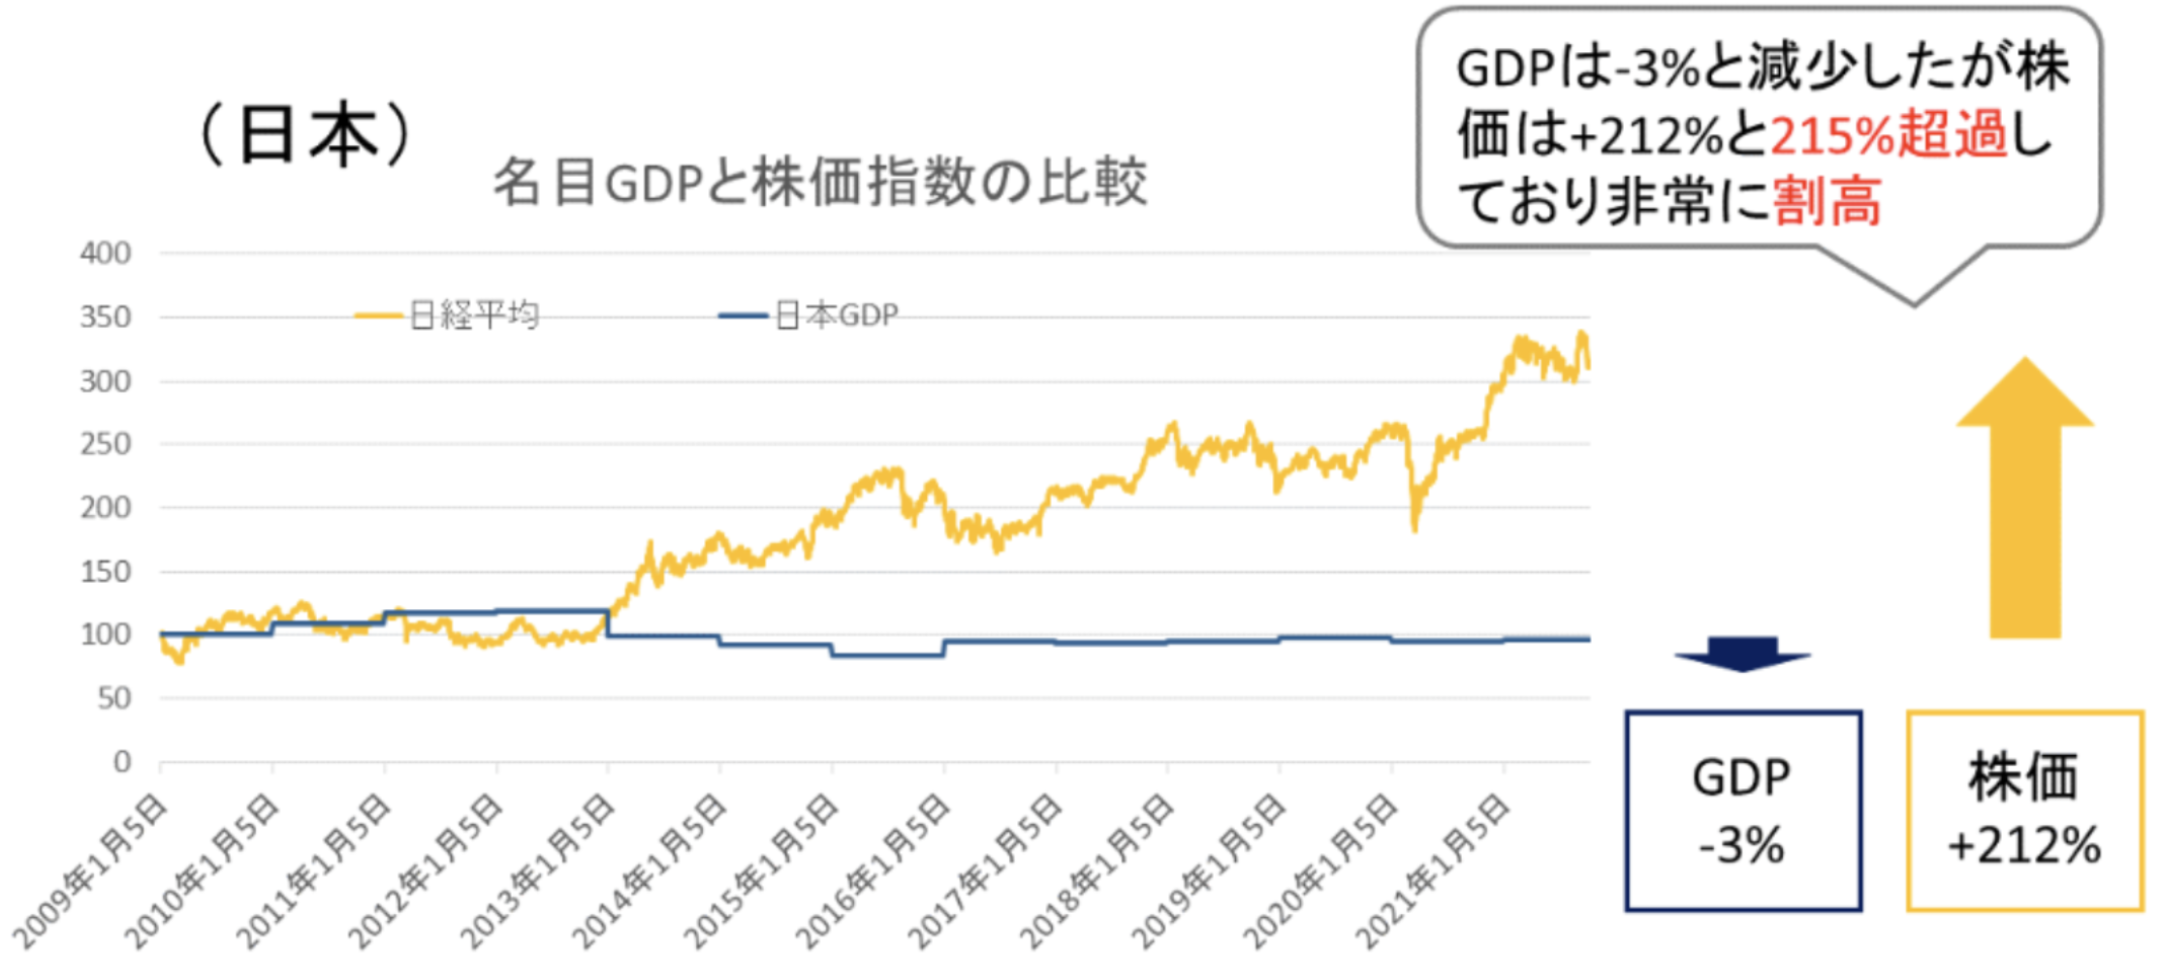 日本のGDPと日経平均の比較